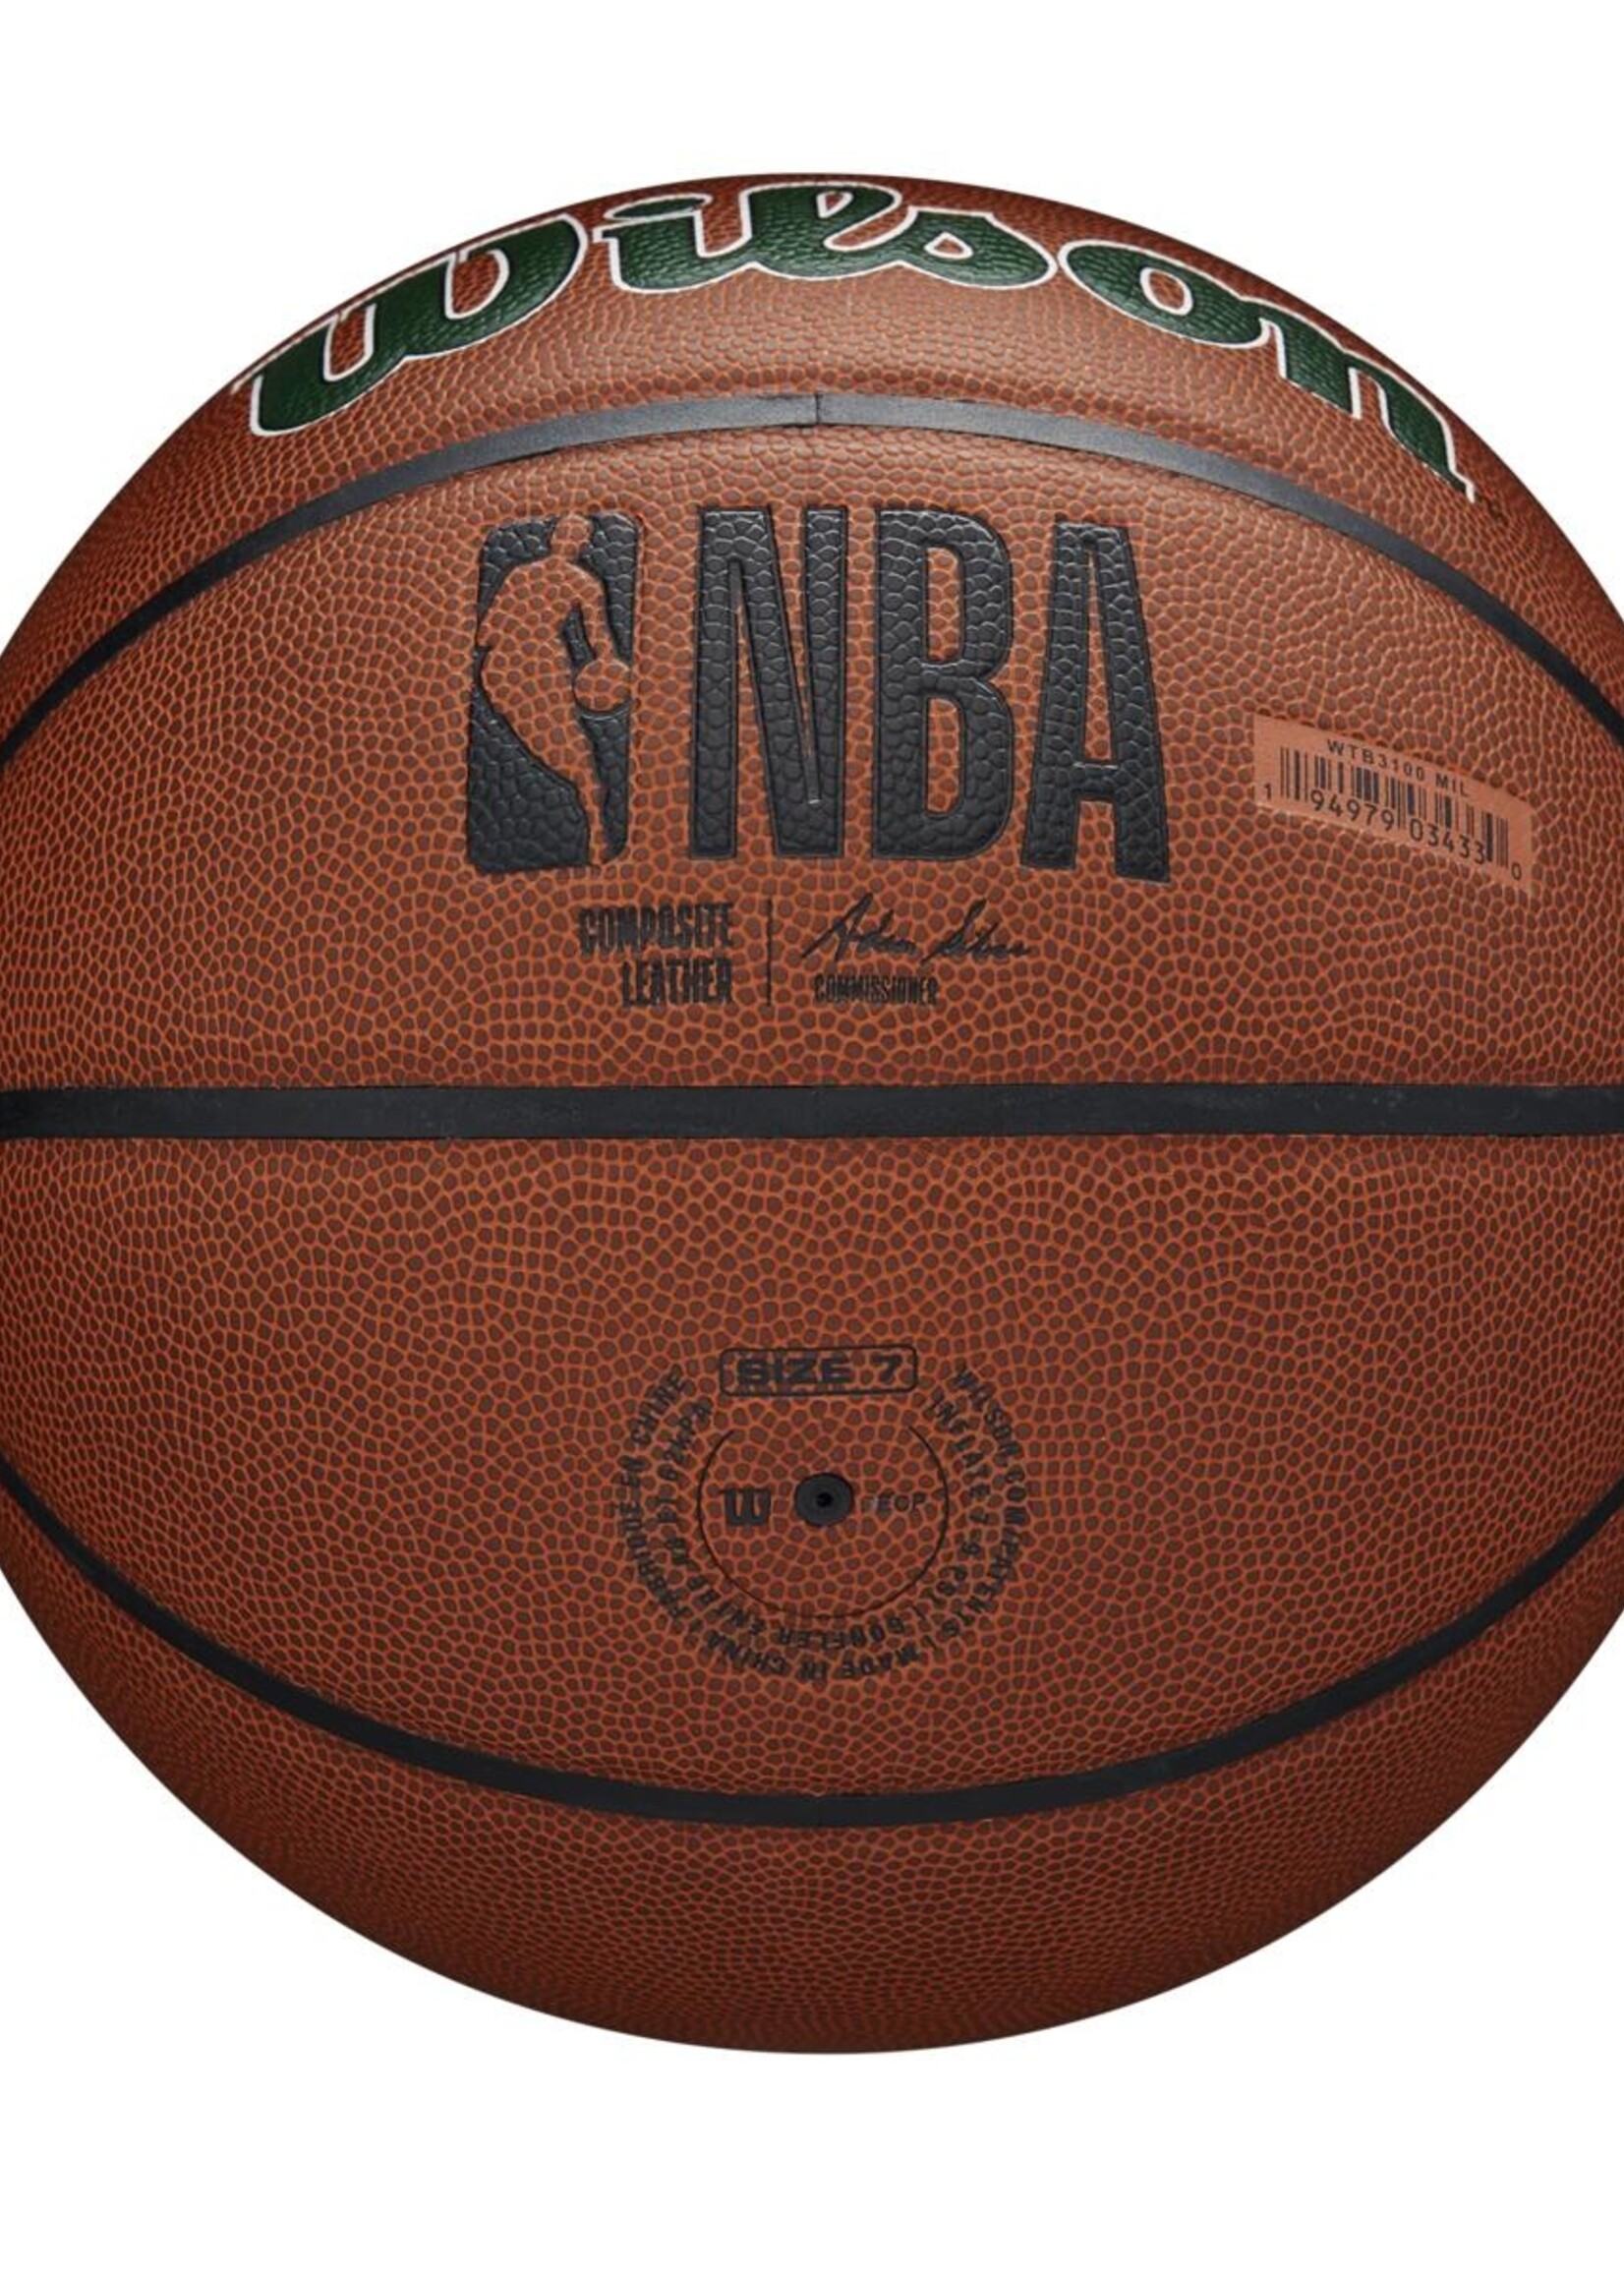 Wilson Wilson NBA MILWAUKEE BUCKS Composite Indoor / Outdoor Basketbal (7)